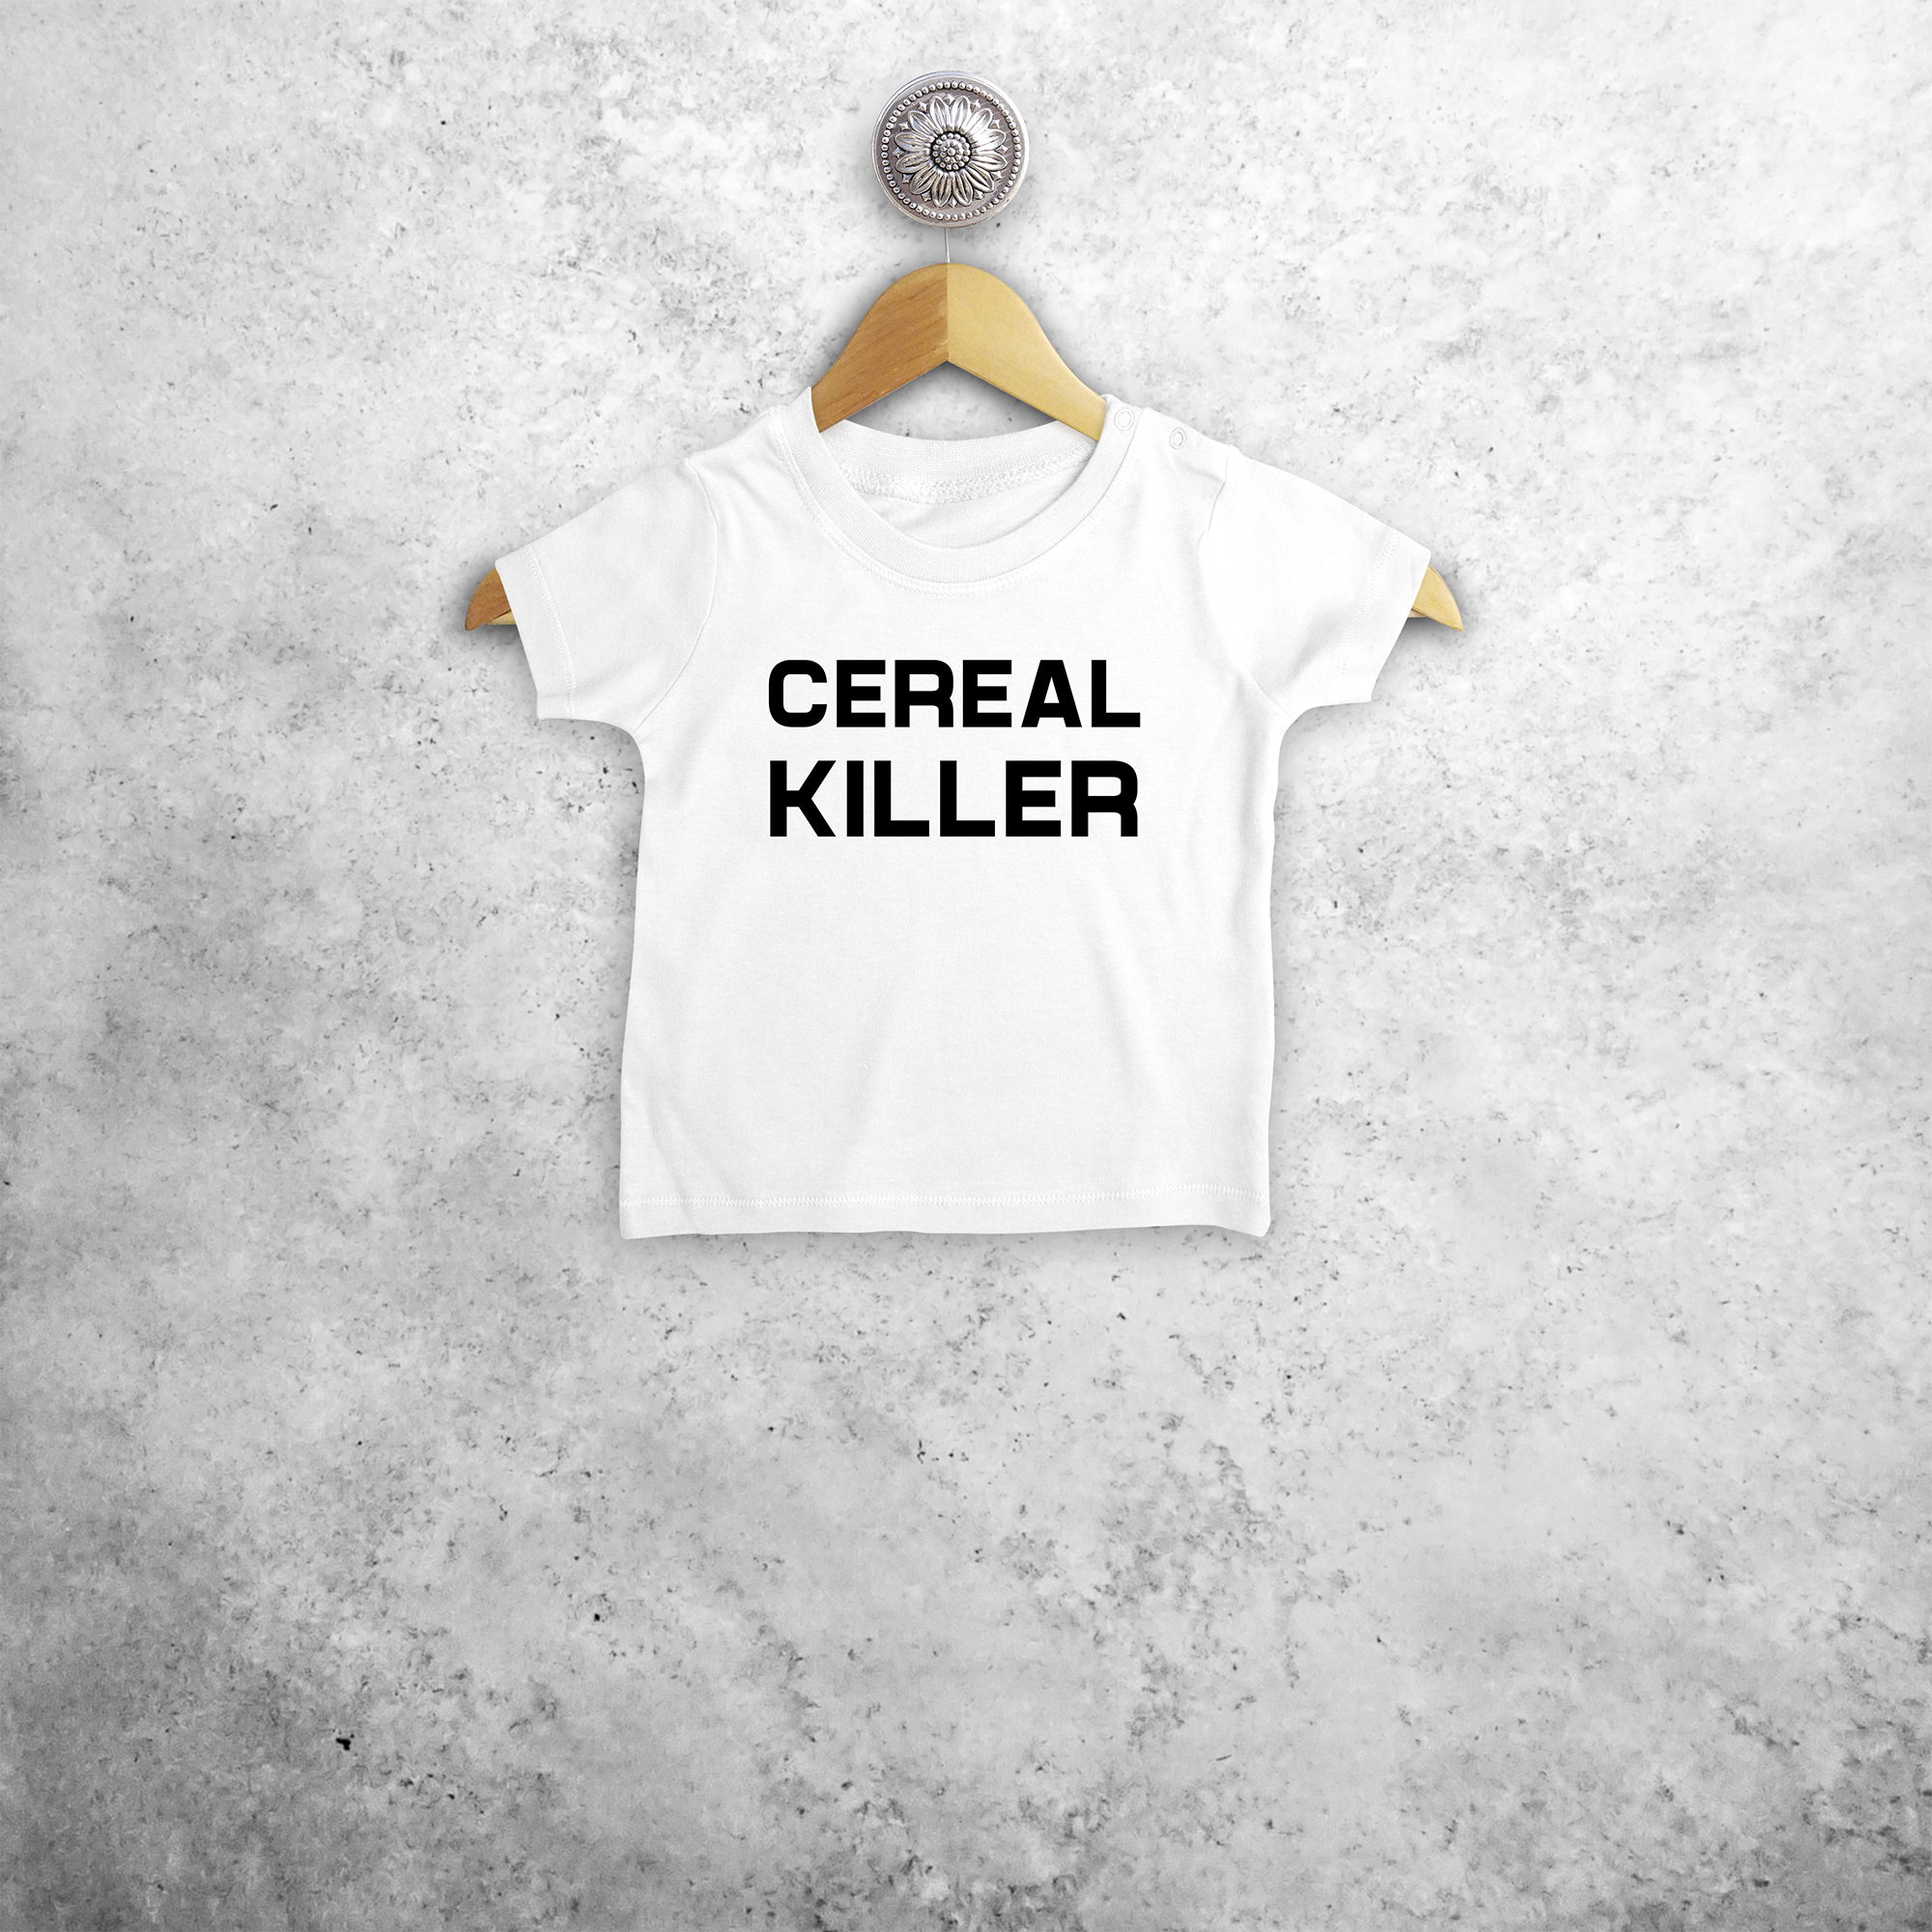 'Cereal killer' baby shirt met korte mouwen